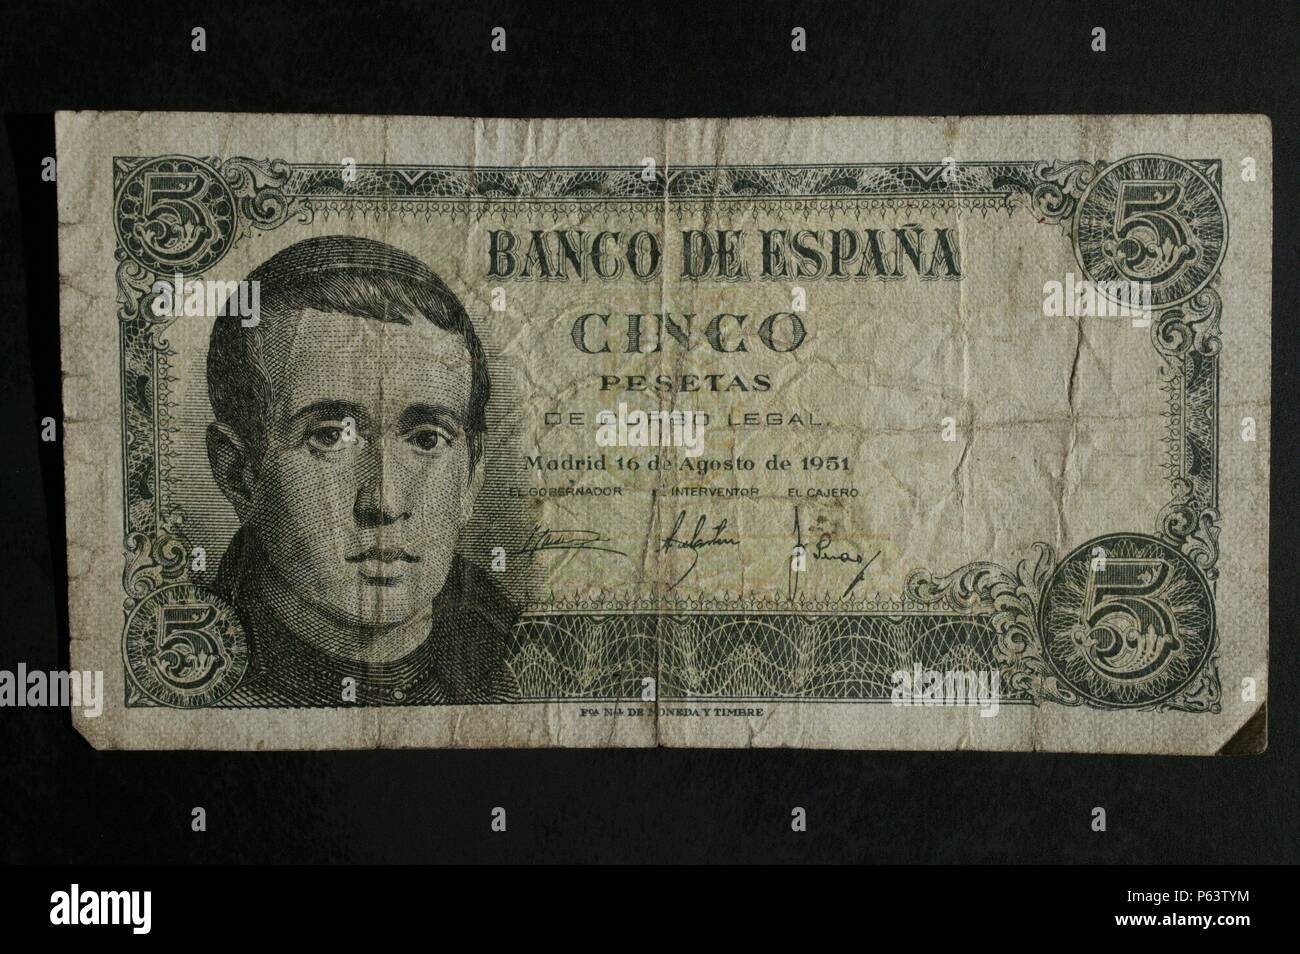 DINERO: BILLETE DE CINCO PESETAS DE 1951. ANVERSO: RETRATO DE JAIME BALMES. Stock Photo